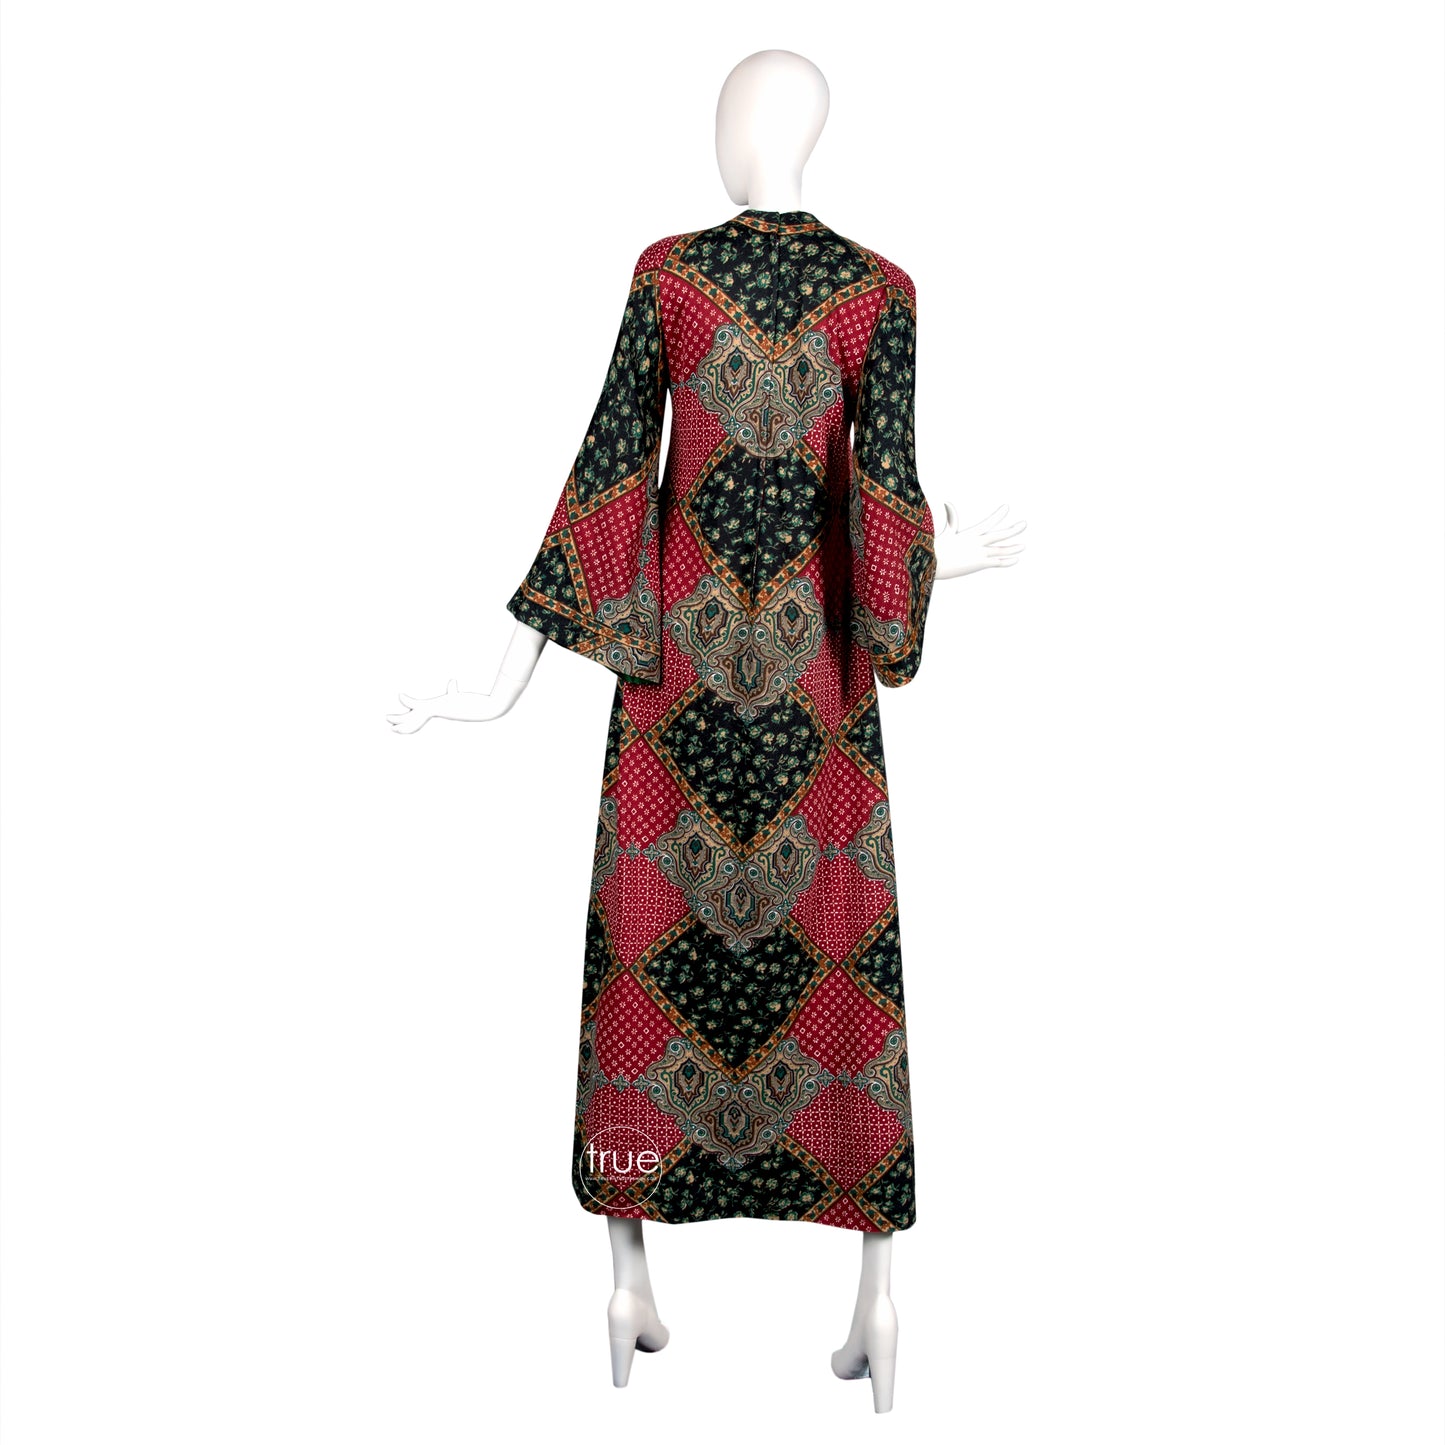 vintage 1960's dress ...amazing designer Tina Leser Original wool ethnic dashiki caftan dress